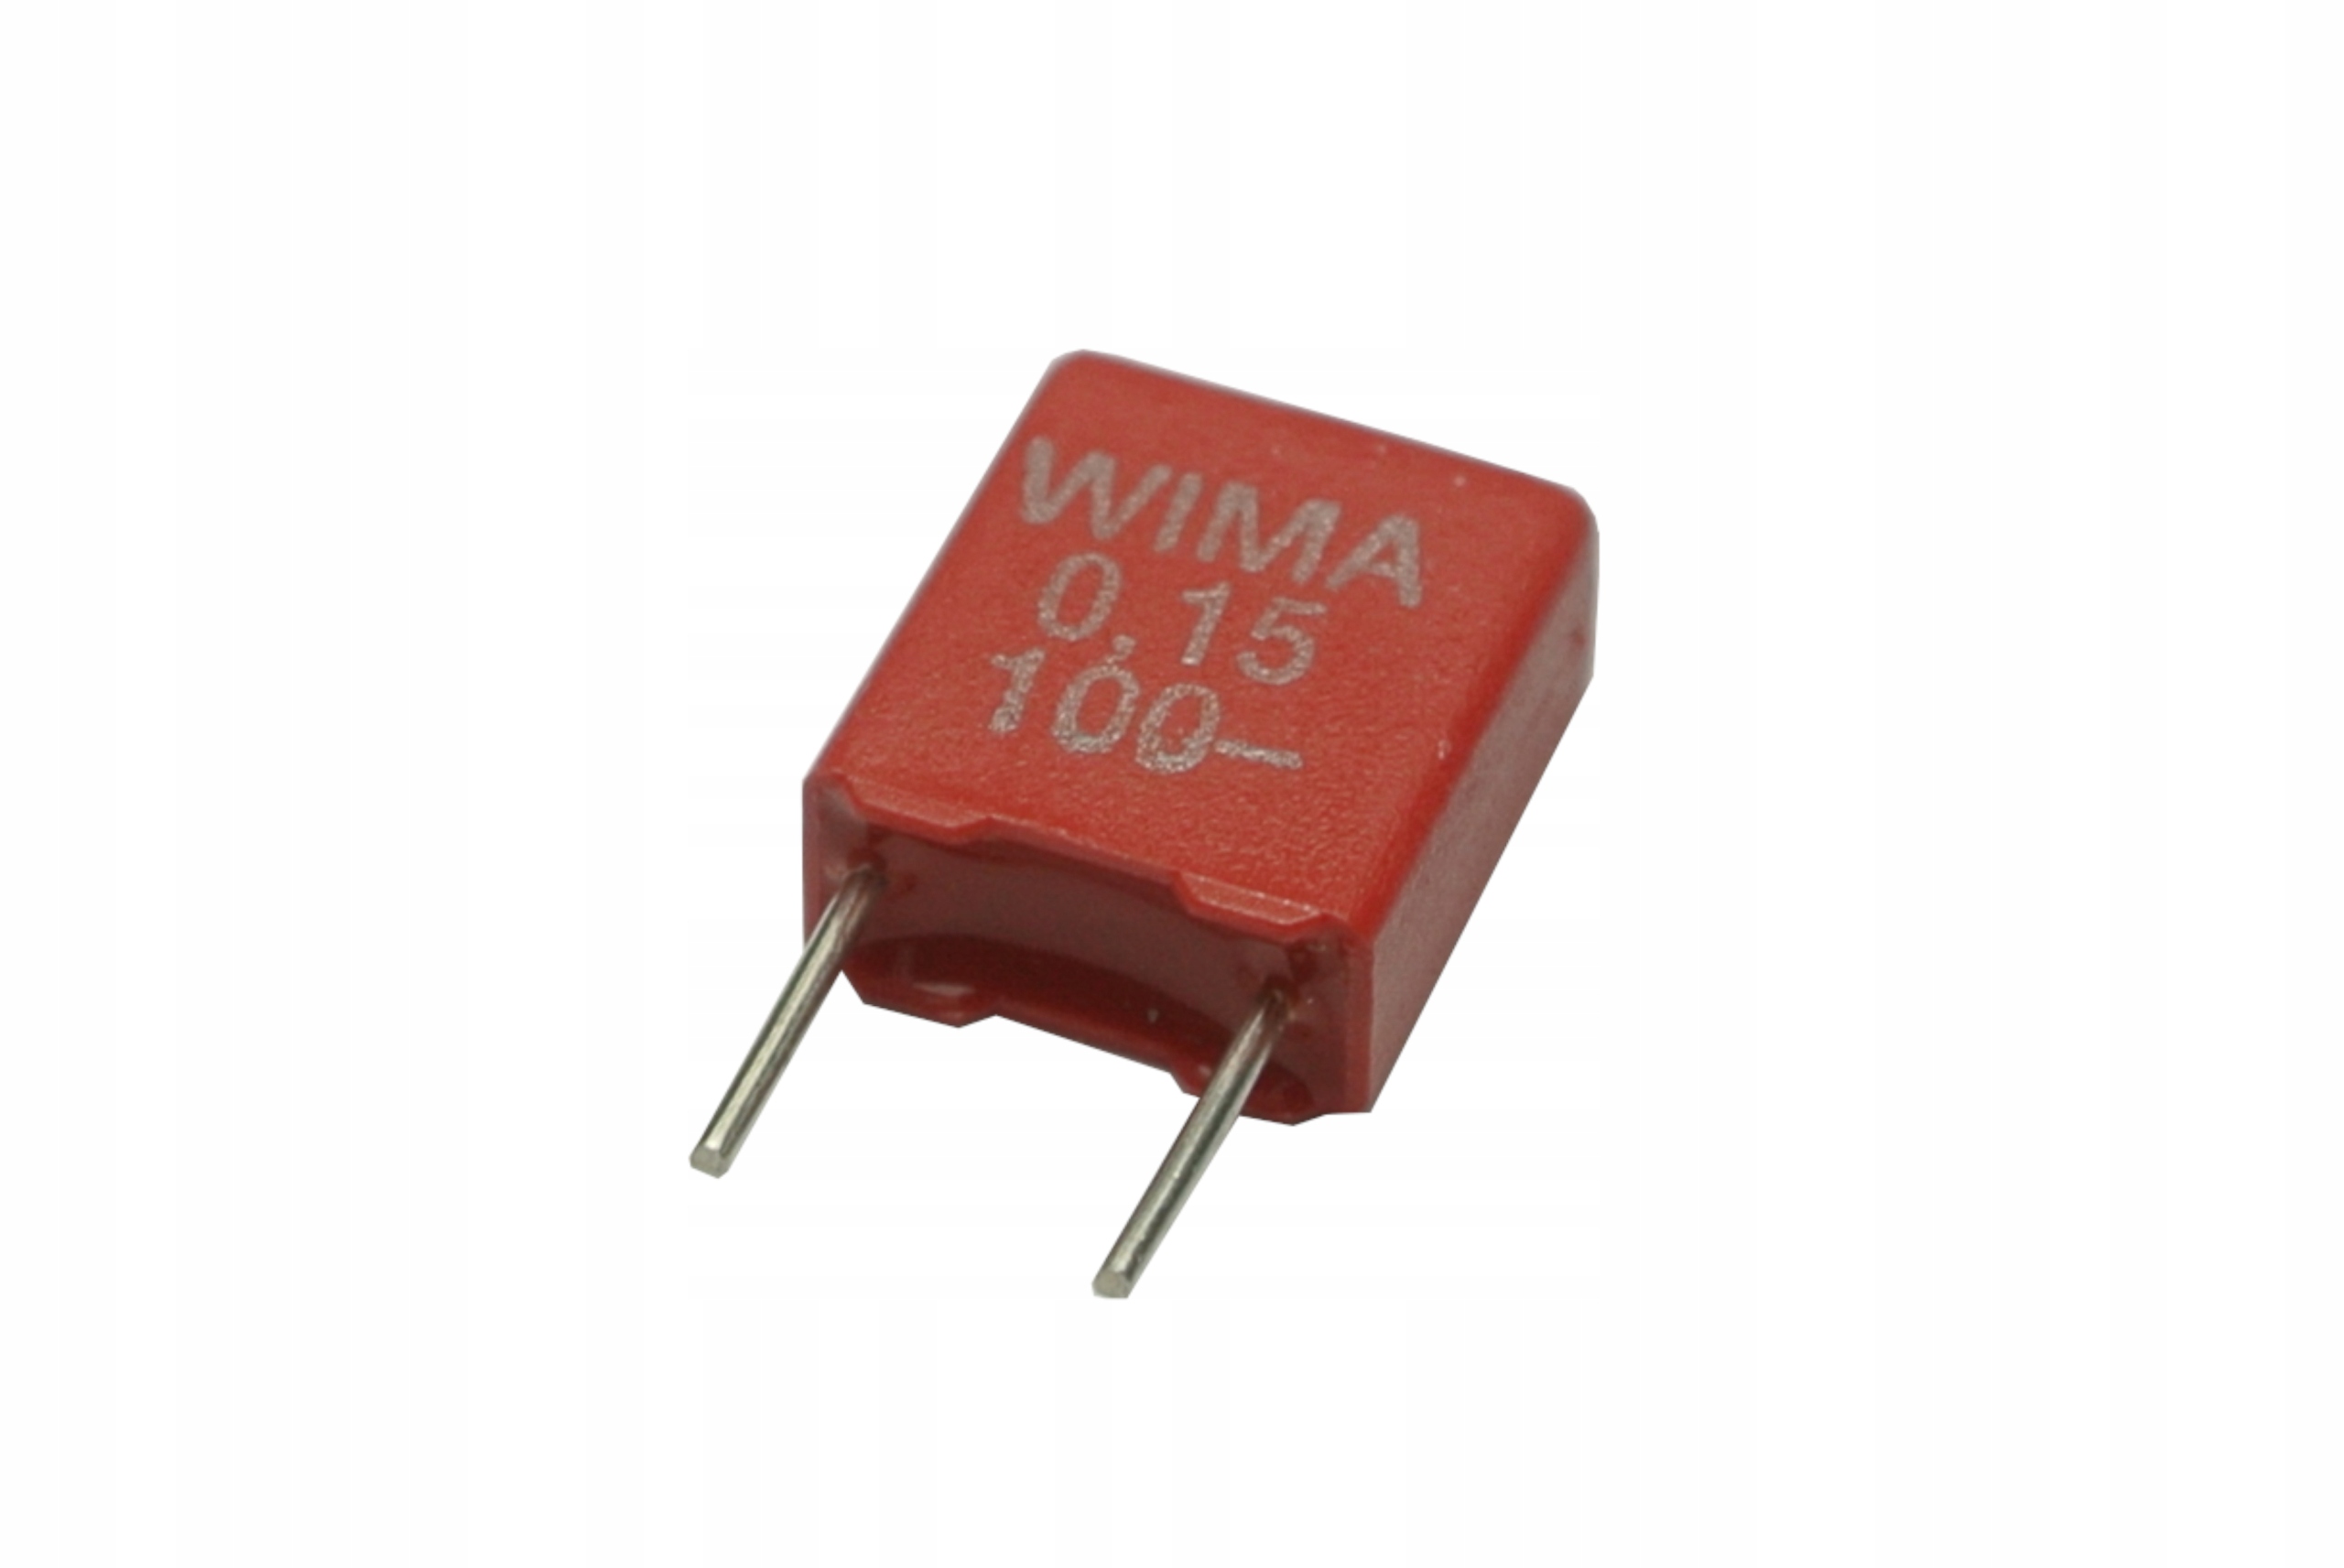 10% 2 Kondensator RM27.5 capacitor 2,2uF 250V Wima MKS 4 